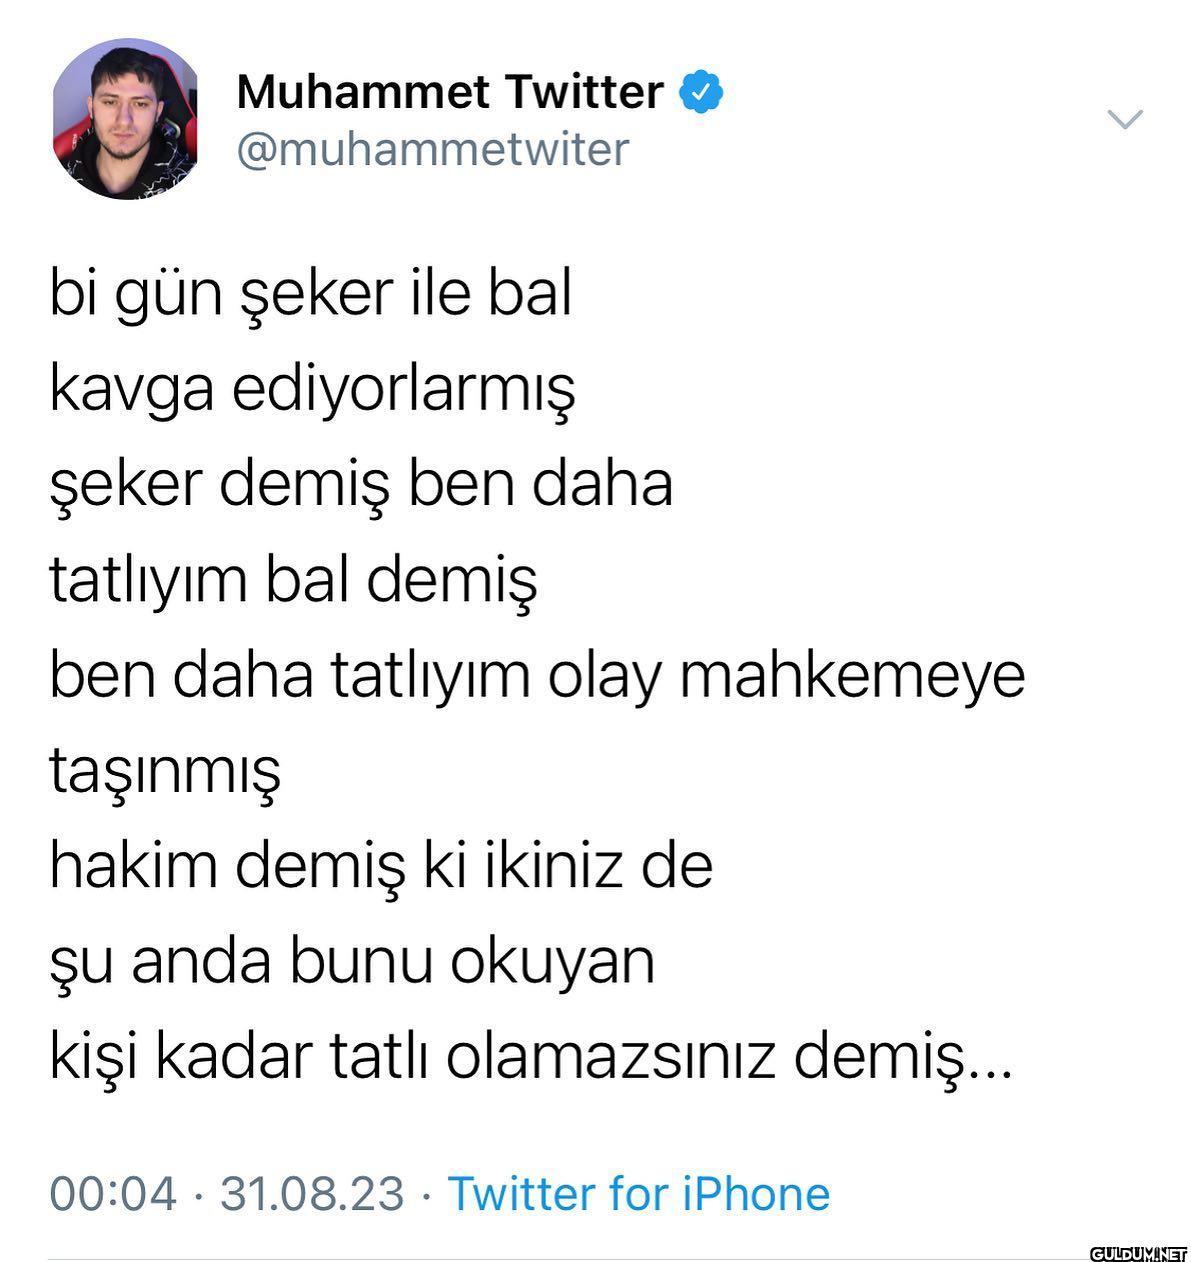 Muhammet Twitter on August...